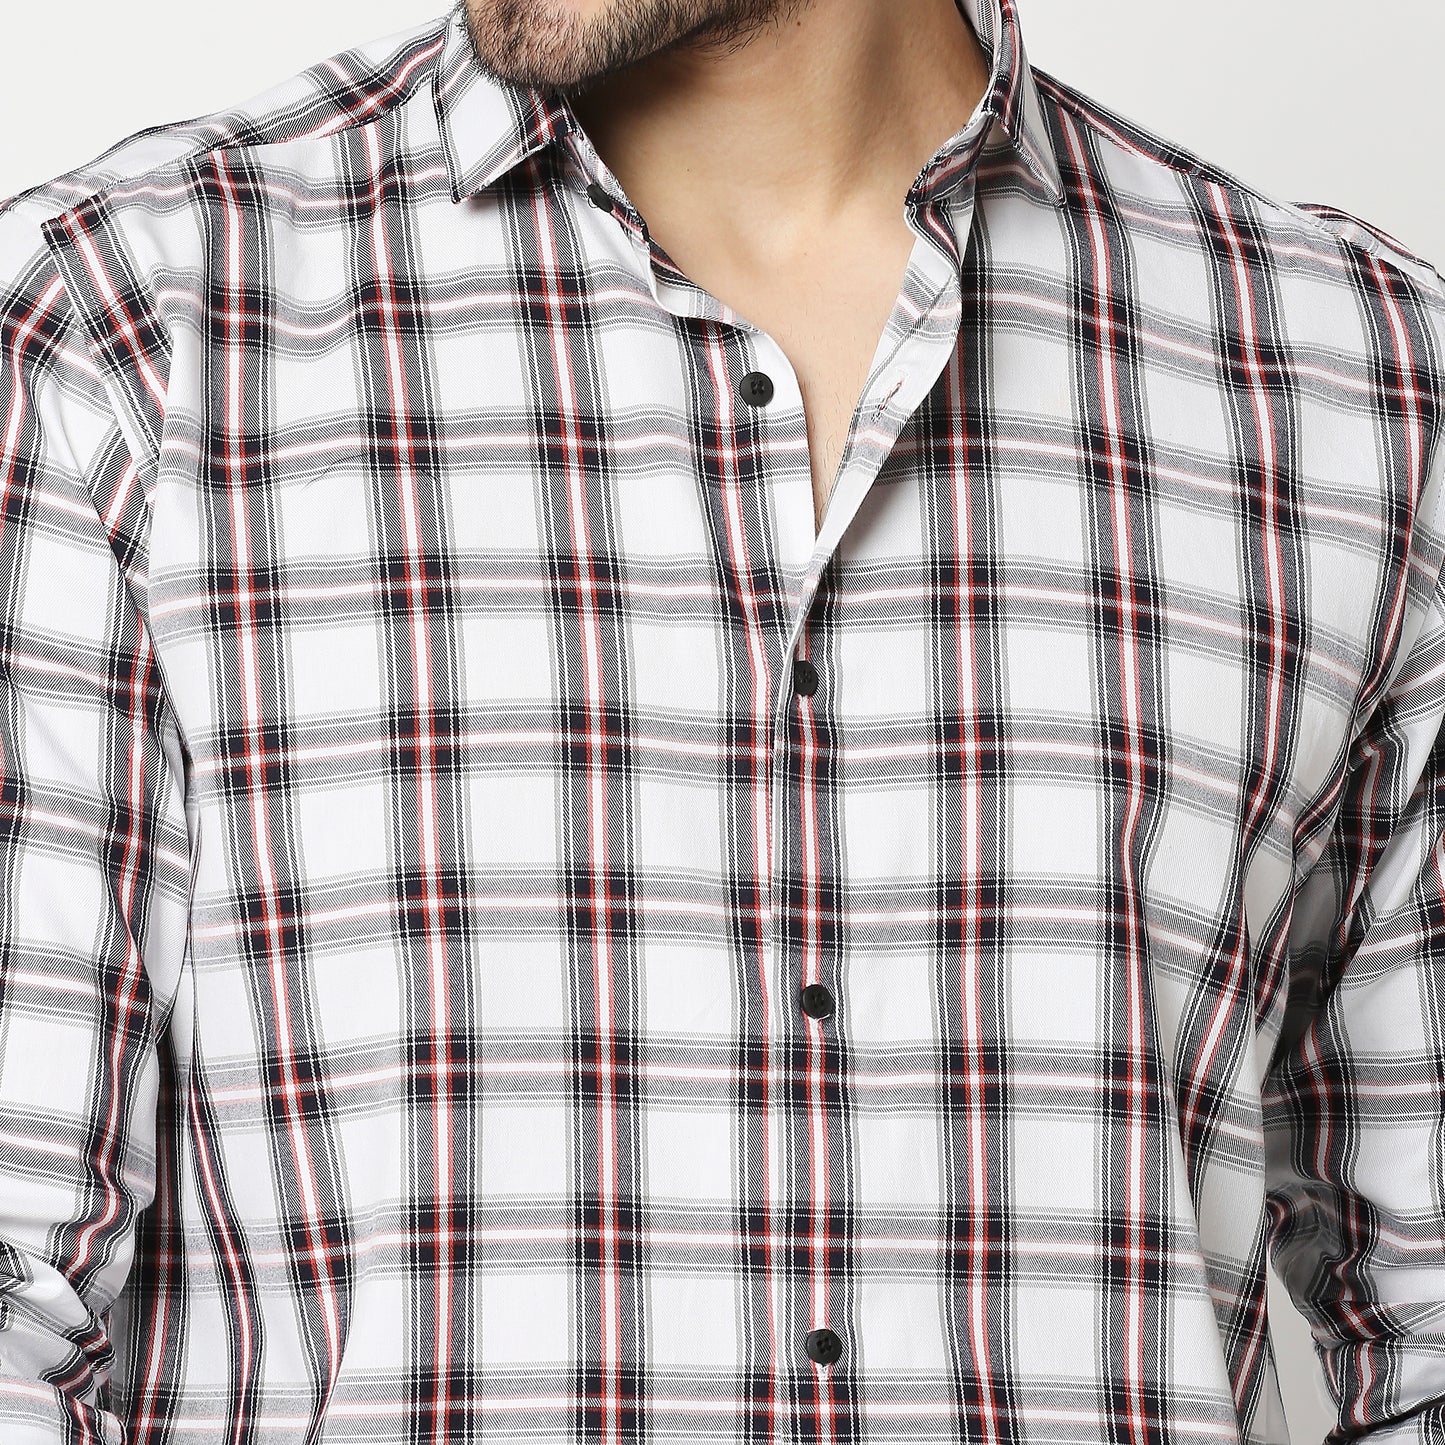 Fostino Flannel Checks  Full Sleeves Shirt - Fostino - Shirts & Tops